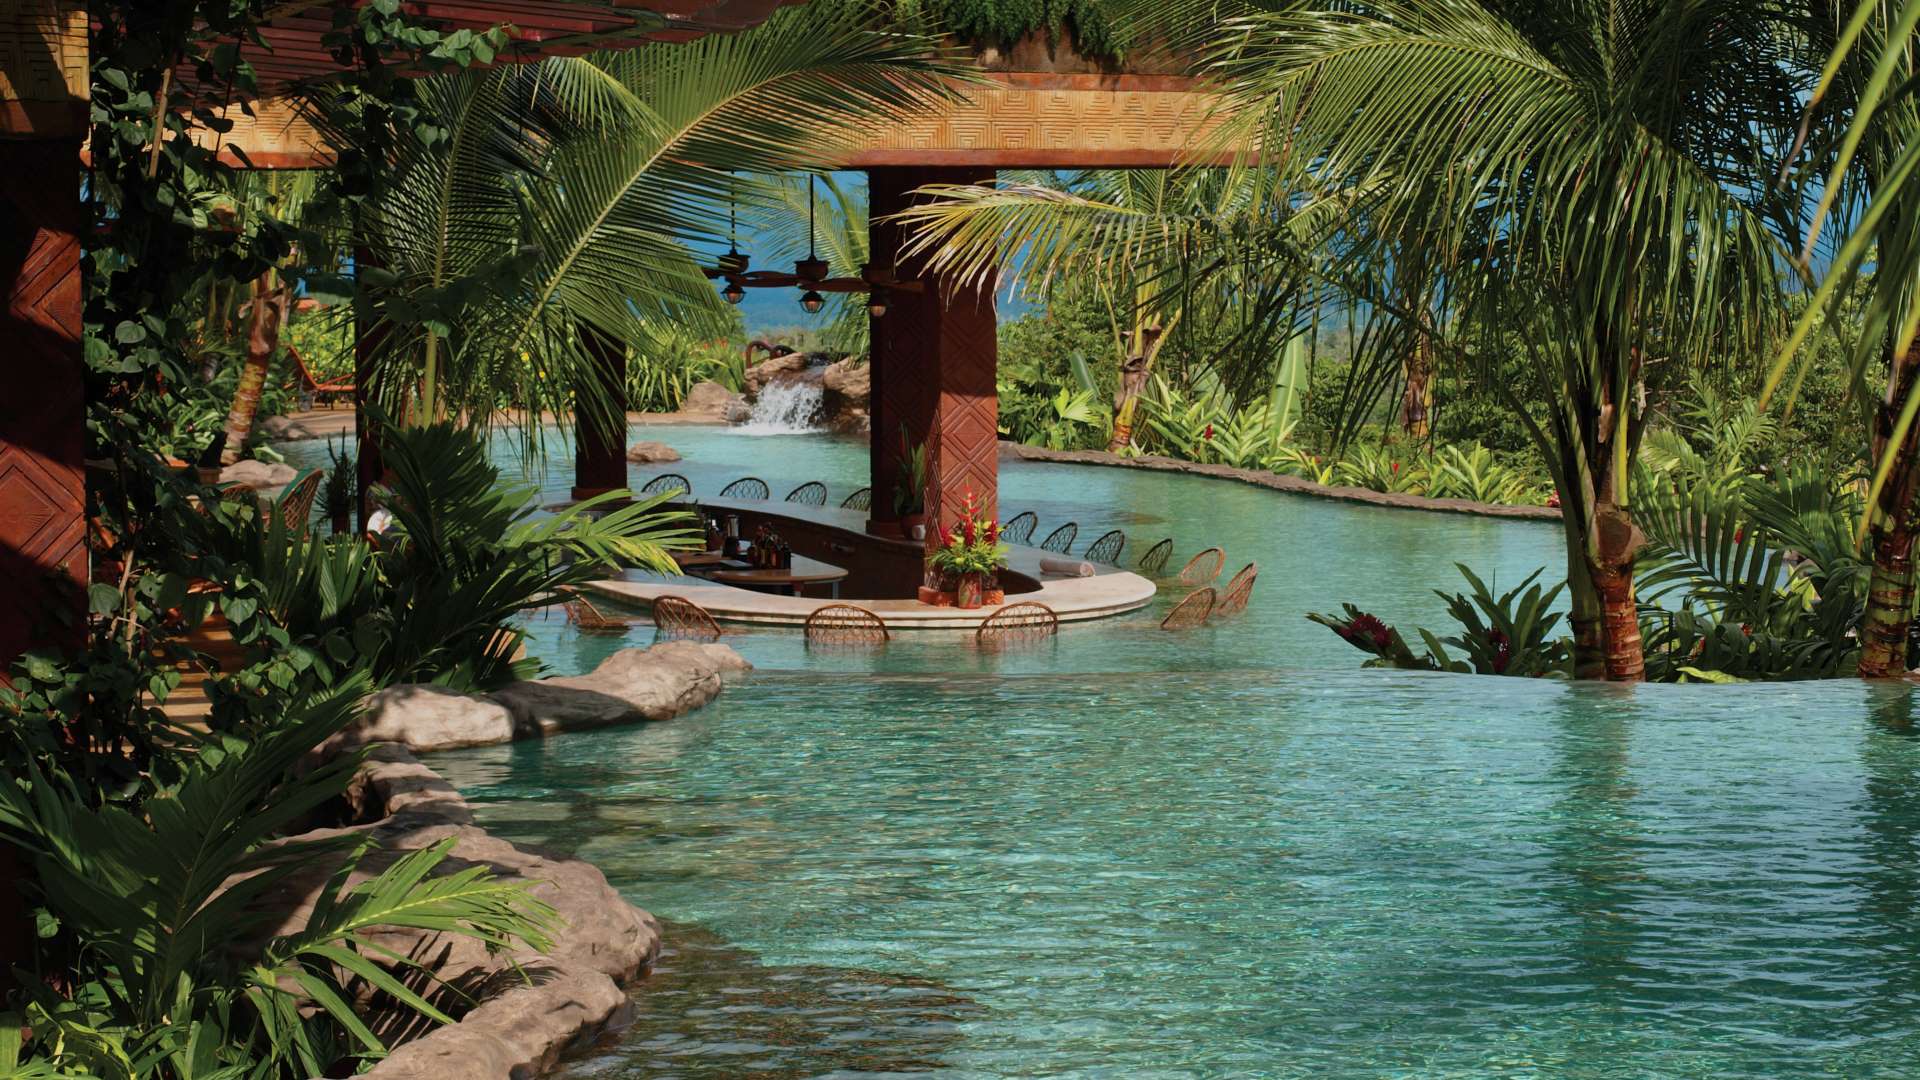 The Springs Resort Pool